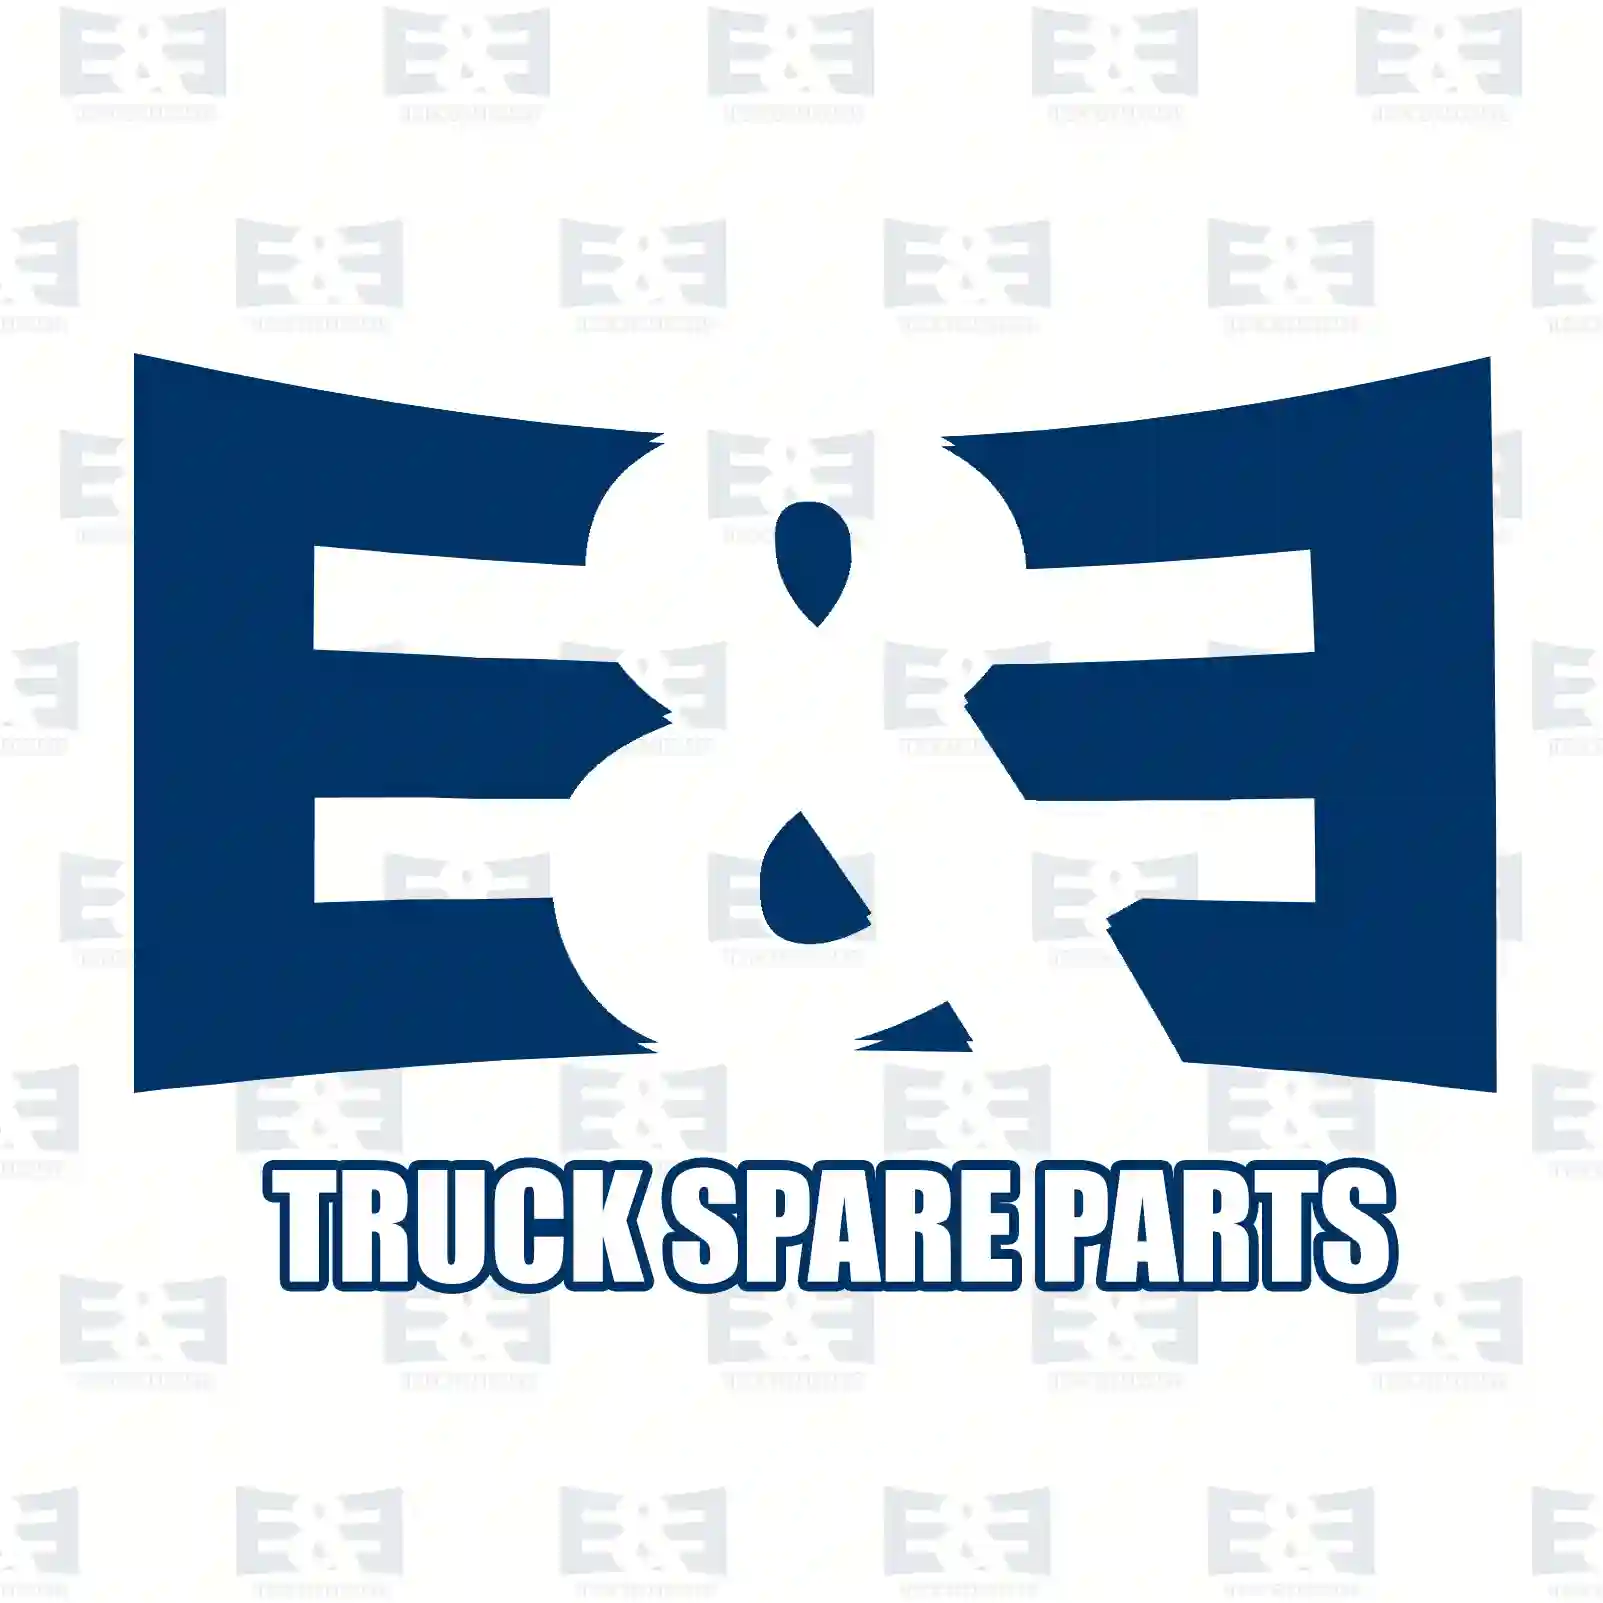 Wiper linkage, 2E2293163, 81264116052, 81264116054, 81264116089, 81264116093 ||  2E2293163 E&E Truck Spare Parts | Truck Spare Parts, Auotomotive Spare Parts Wiper linkage, 2E2293163, 81264116052, 81264116054, 81264116089, 81264116093 ||  2E2293163 E&E Truck Spare Parts | Truck Spare Parts, Auotomotive Spare Parts